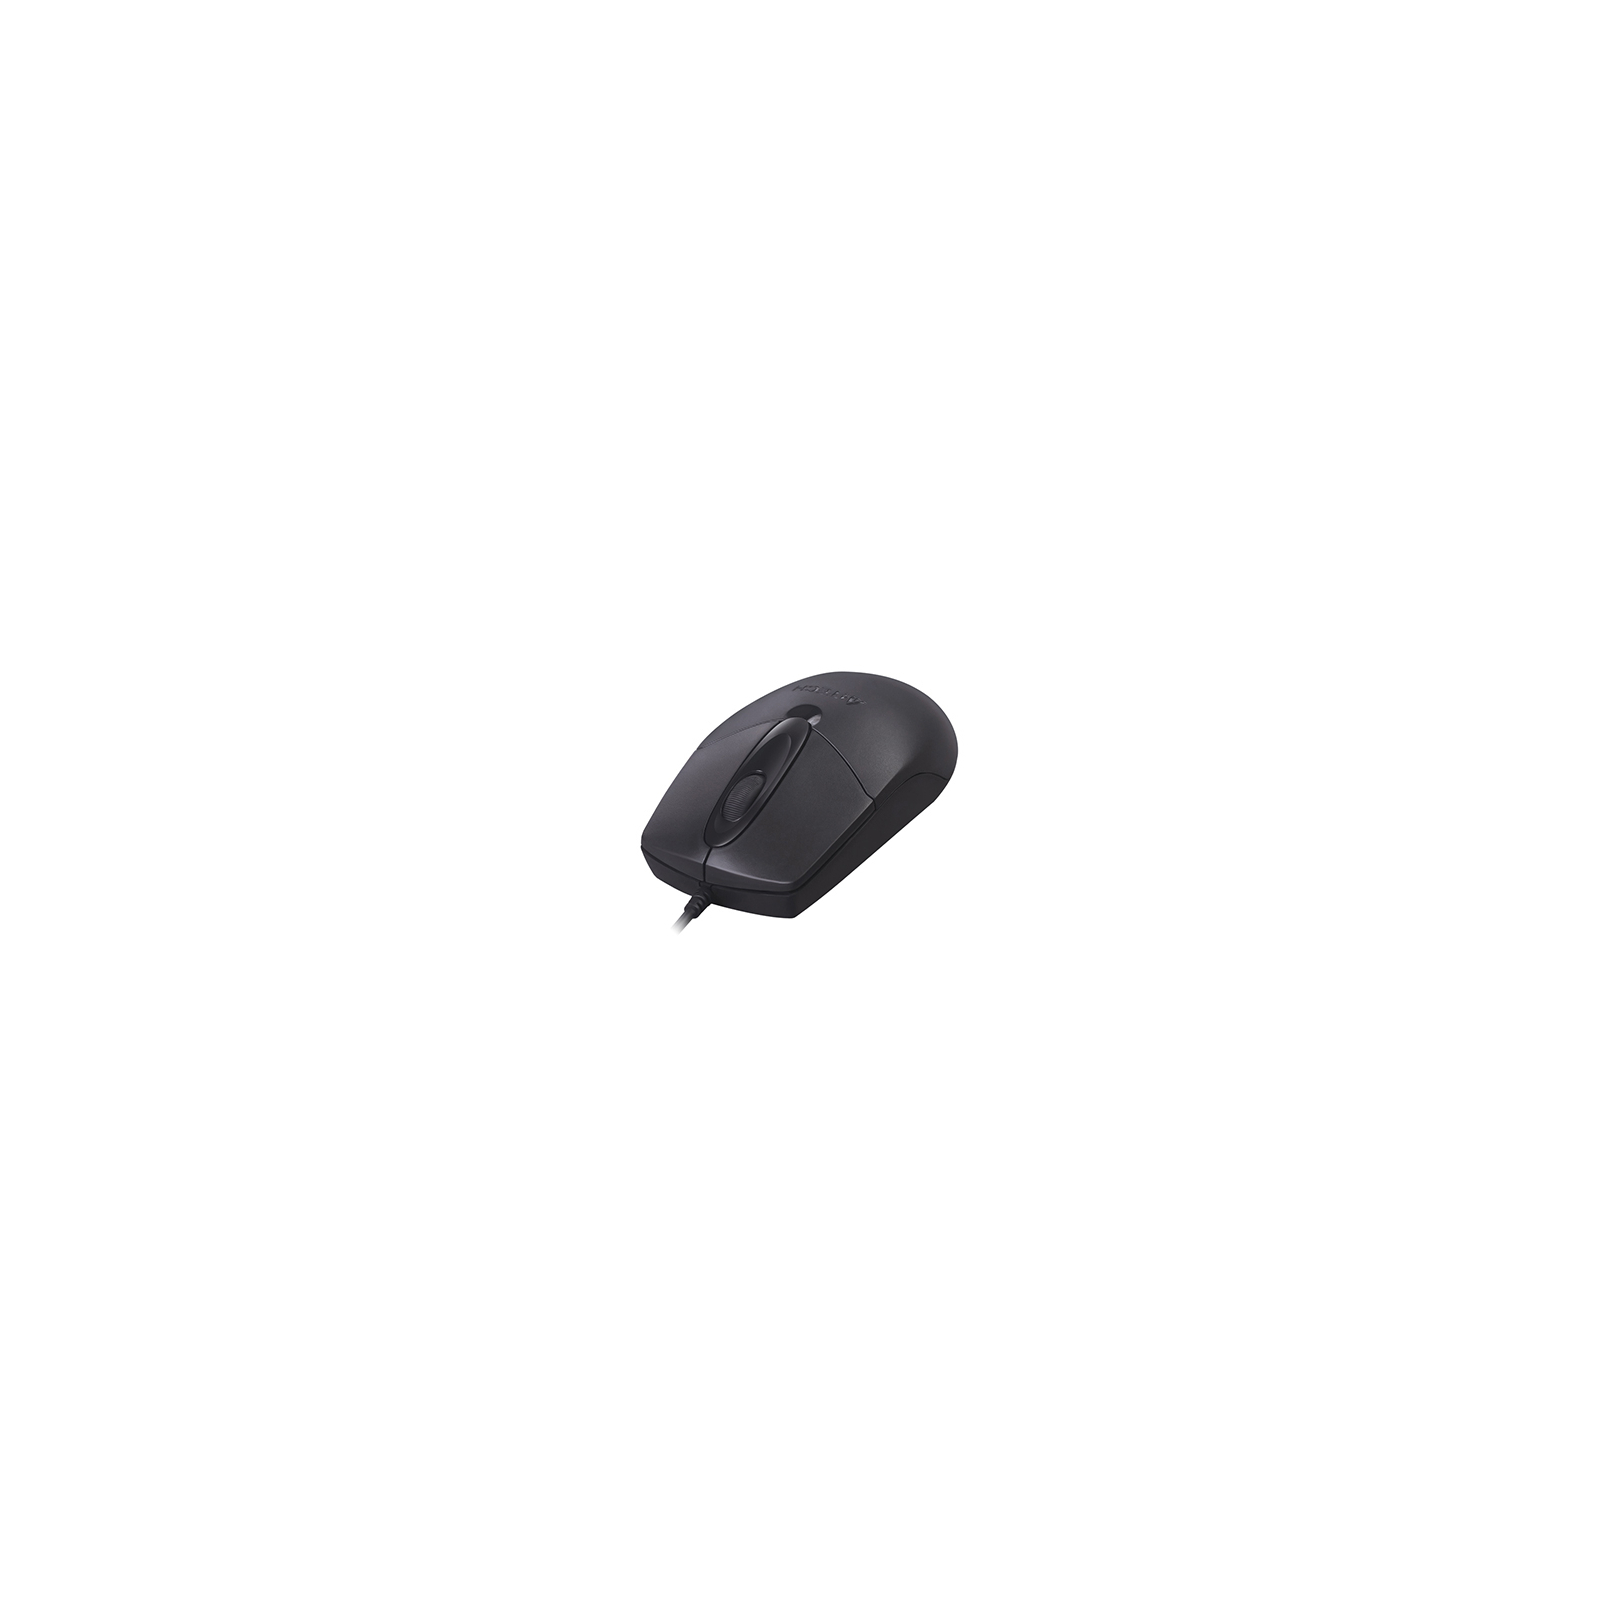 Мышка A4Tech OP-720S USB Black изображение 3